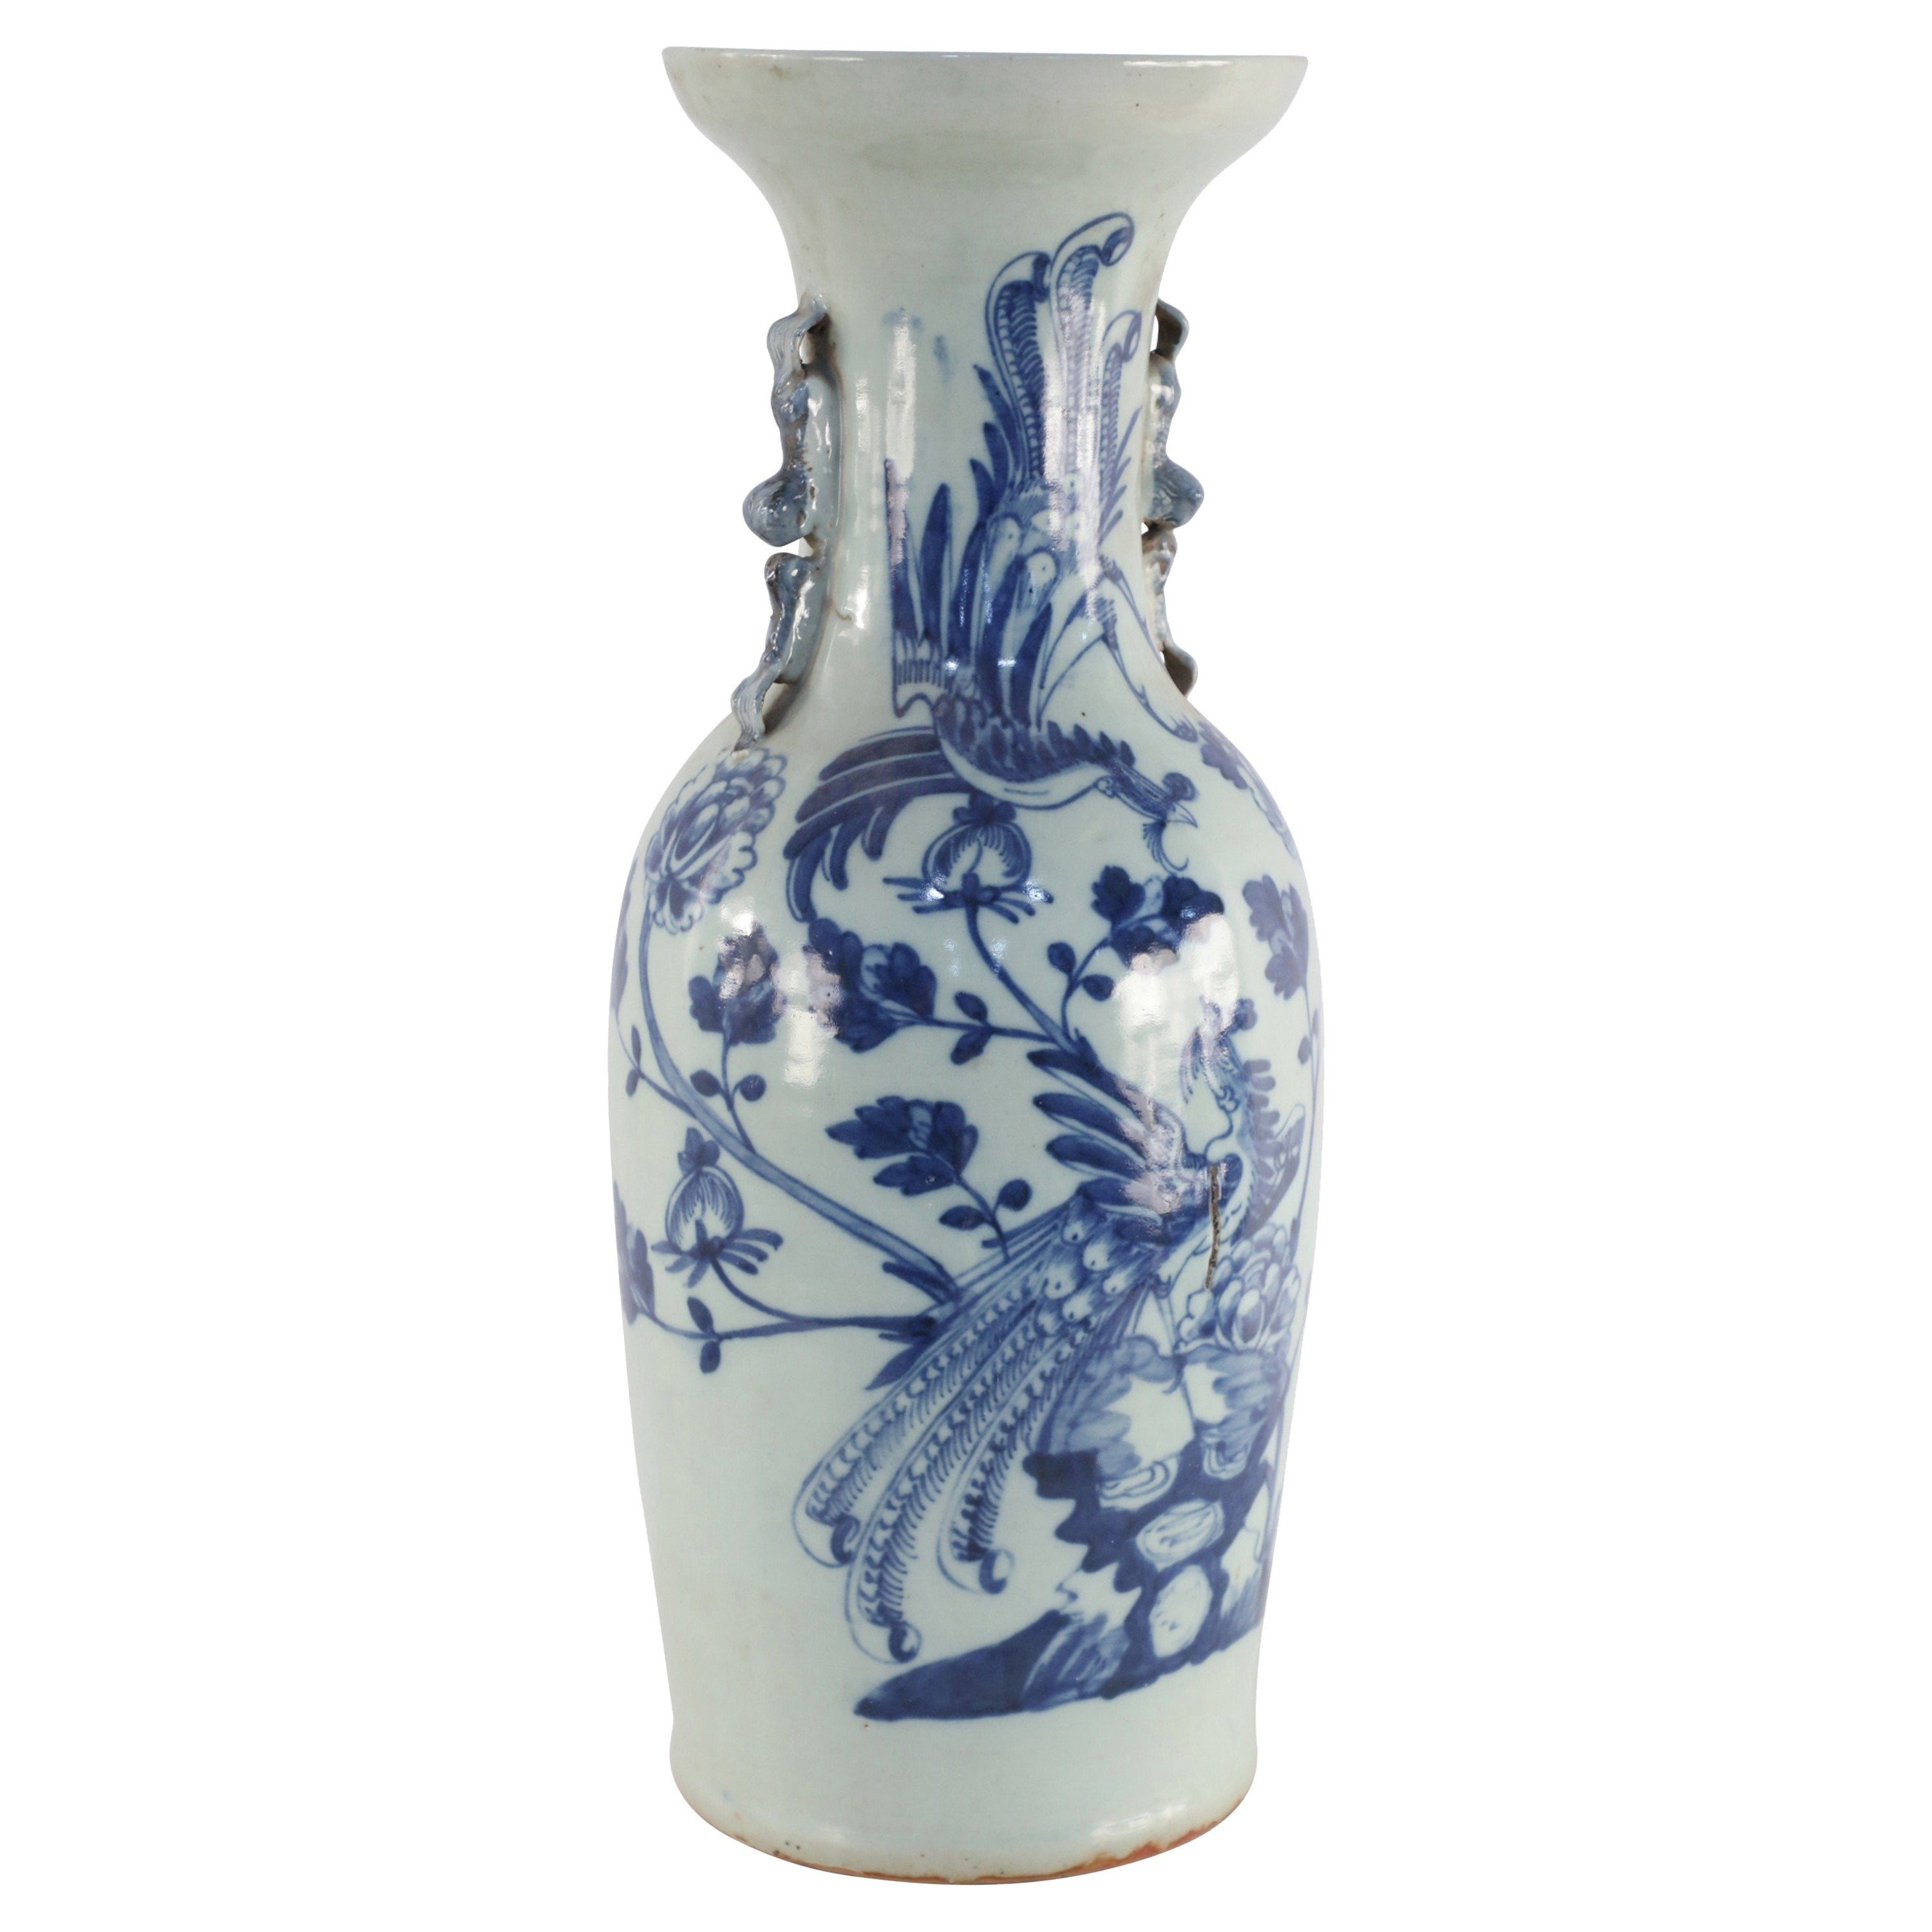 Chinesische Porzellanurne mit weißem und blauem Pfauenmotiv, Chinesisch